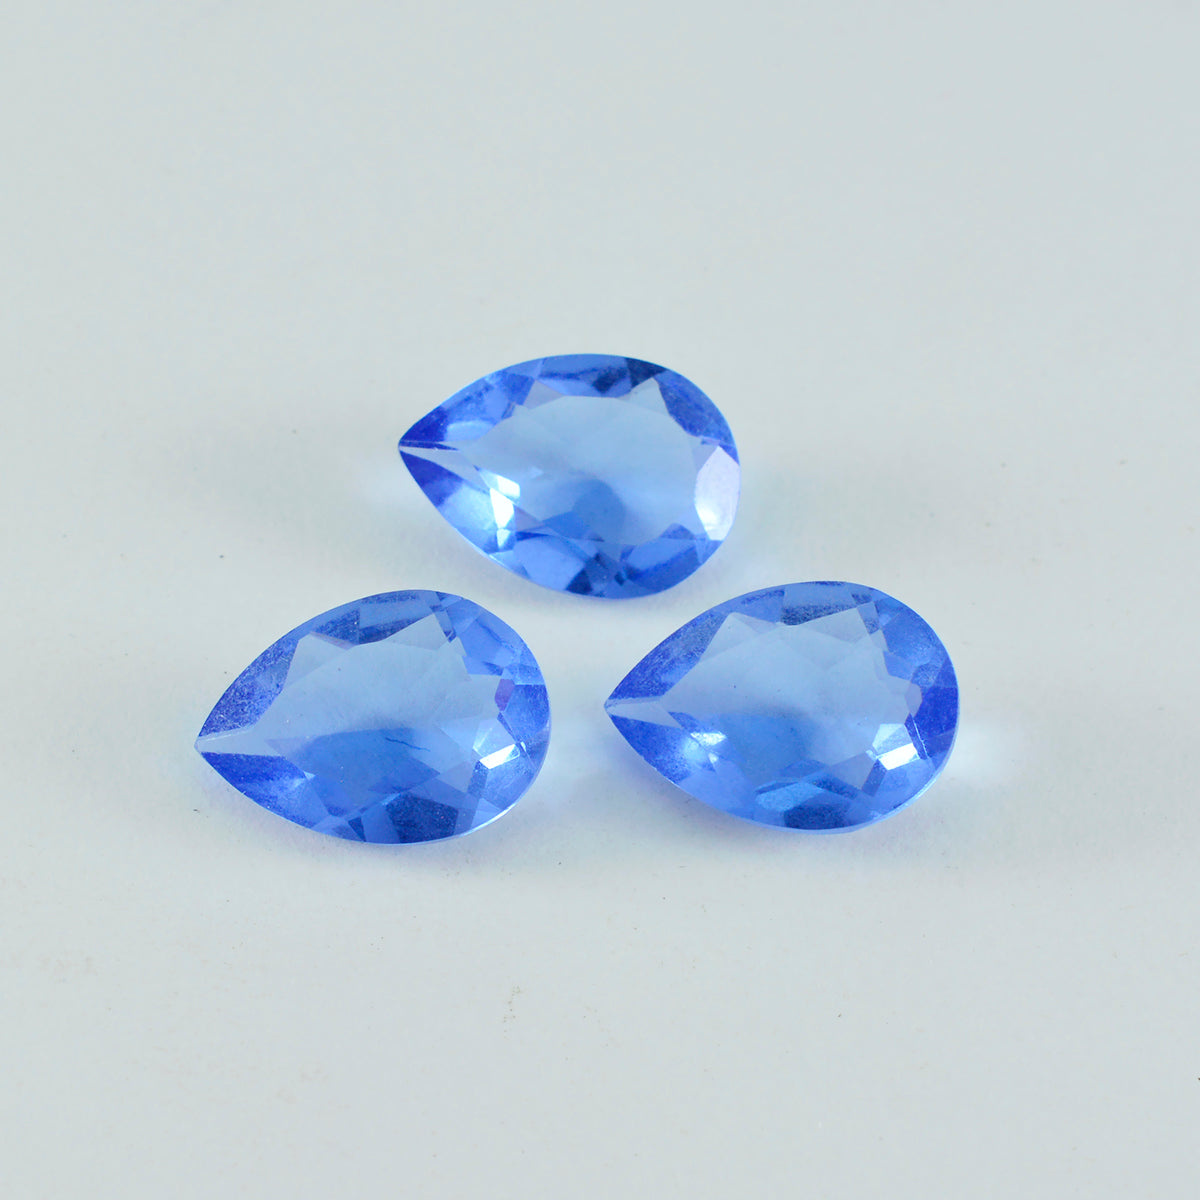 Riyogems 1 pieza de zafiro azul CZ facetado 2x2 mm forma redonda piedra preciosa suelta de gran calidad